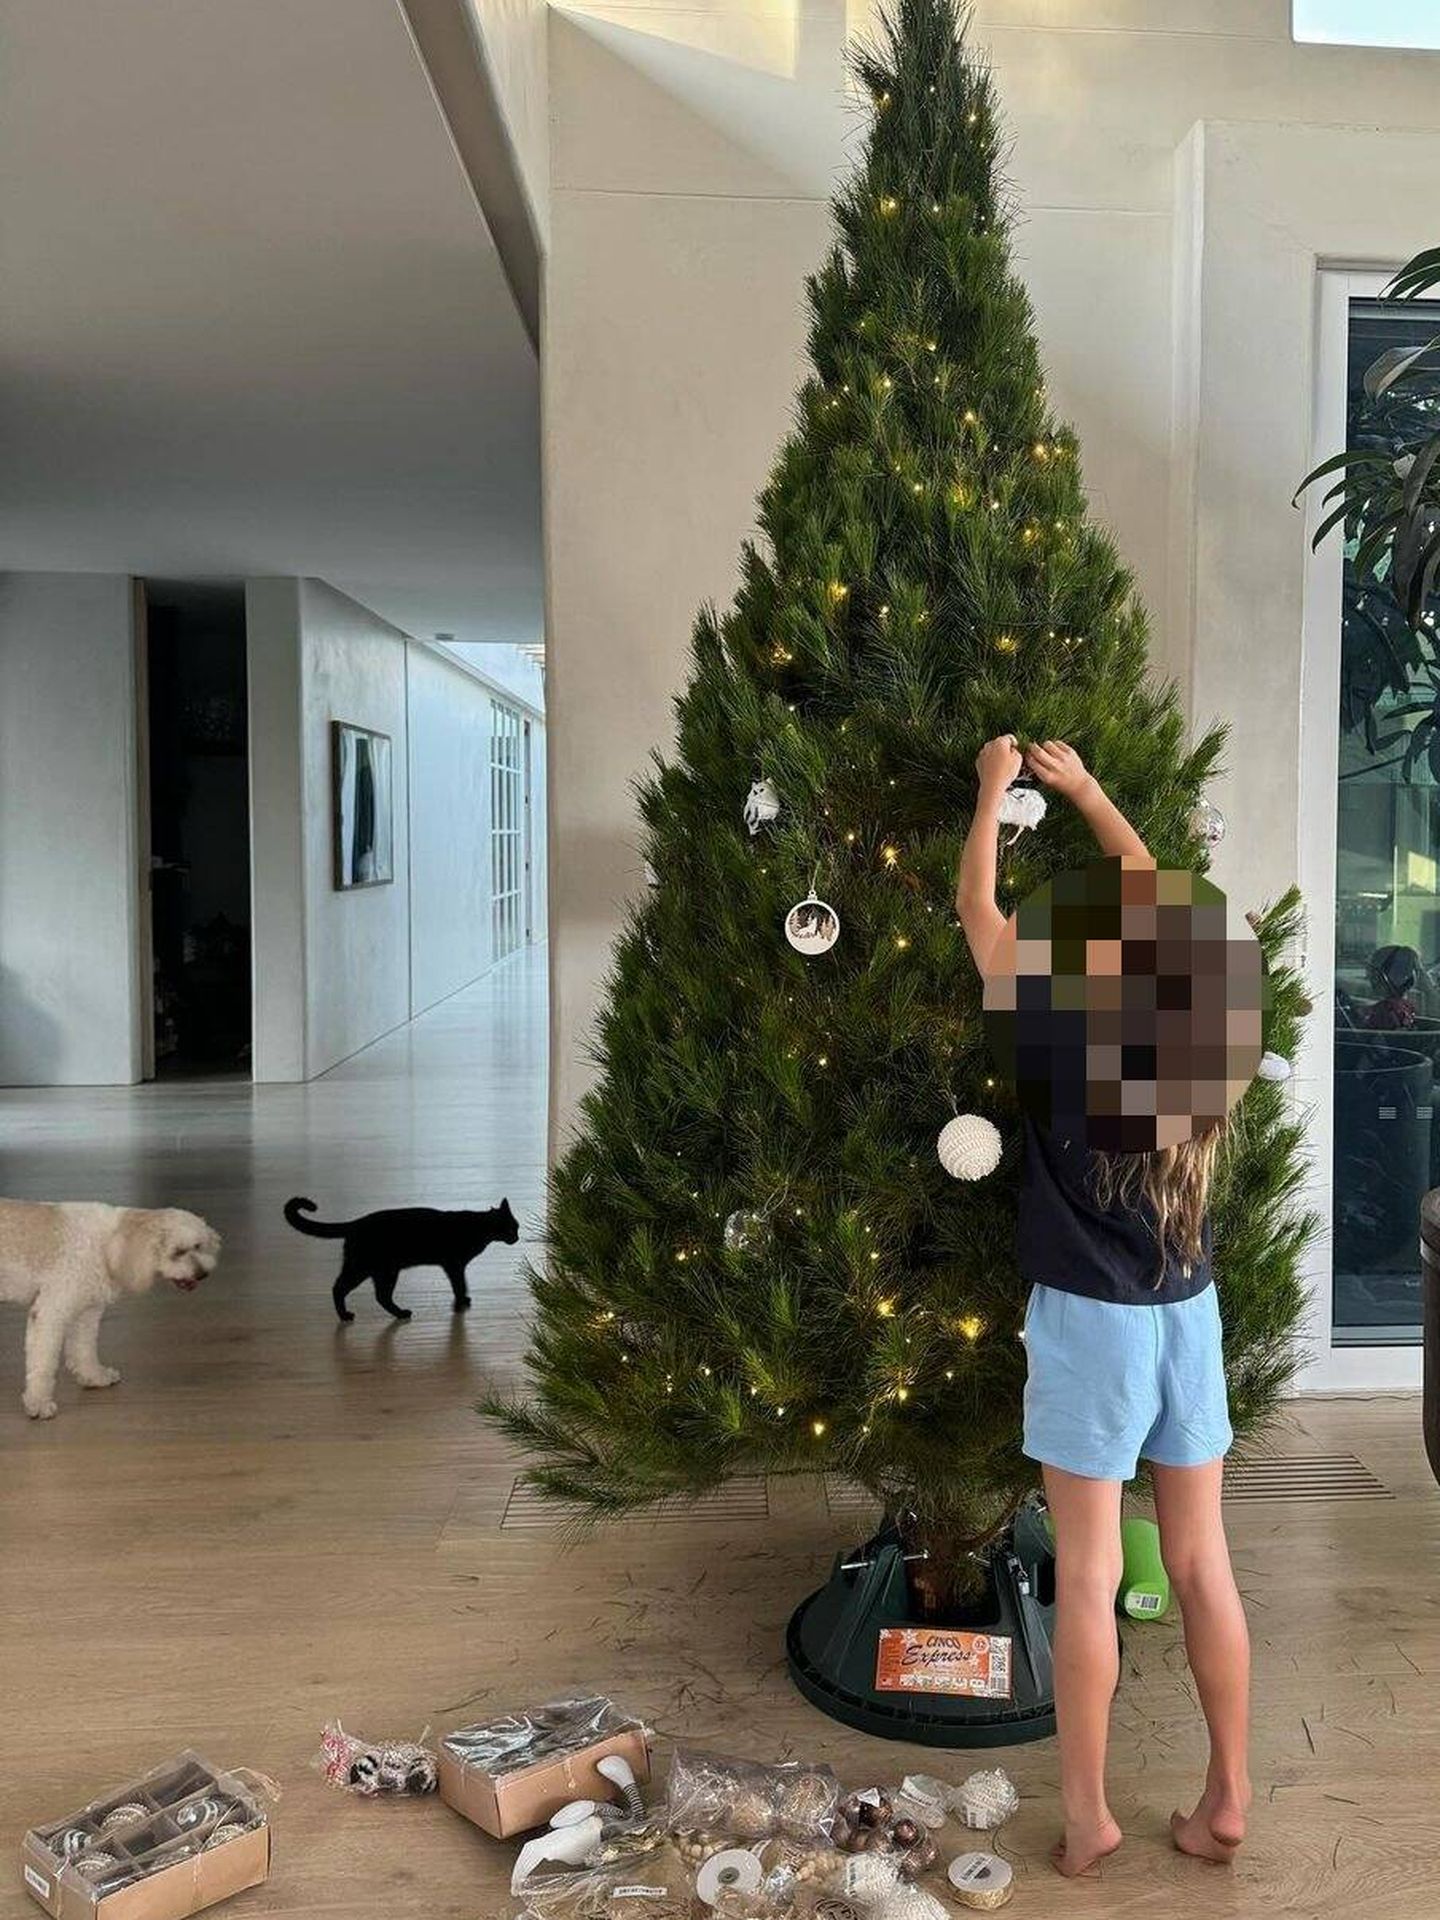 La hija de Elsa y Chris Hemsworth decorando el árbol. (Instagram/@elsapataky)